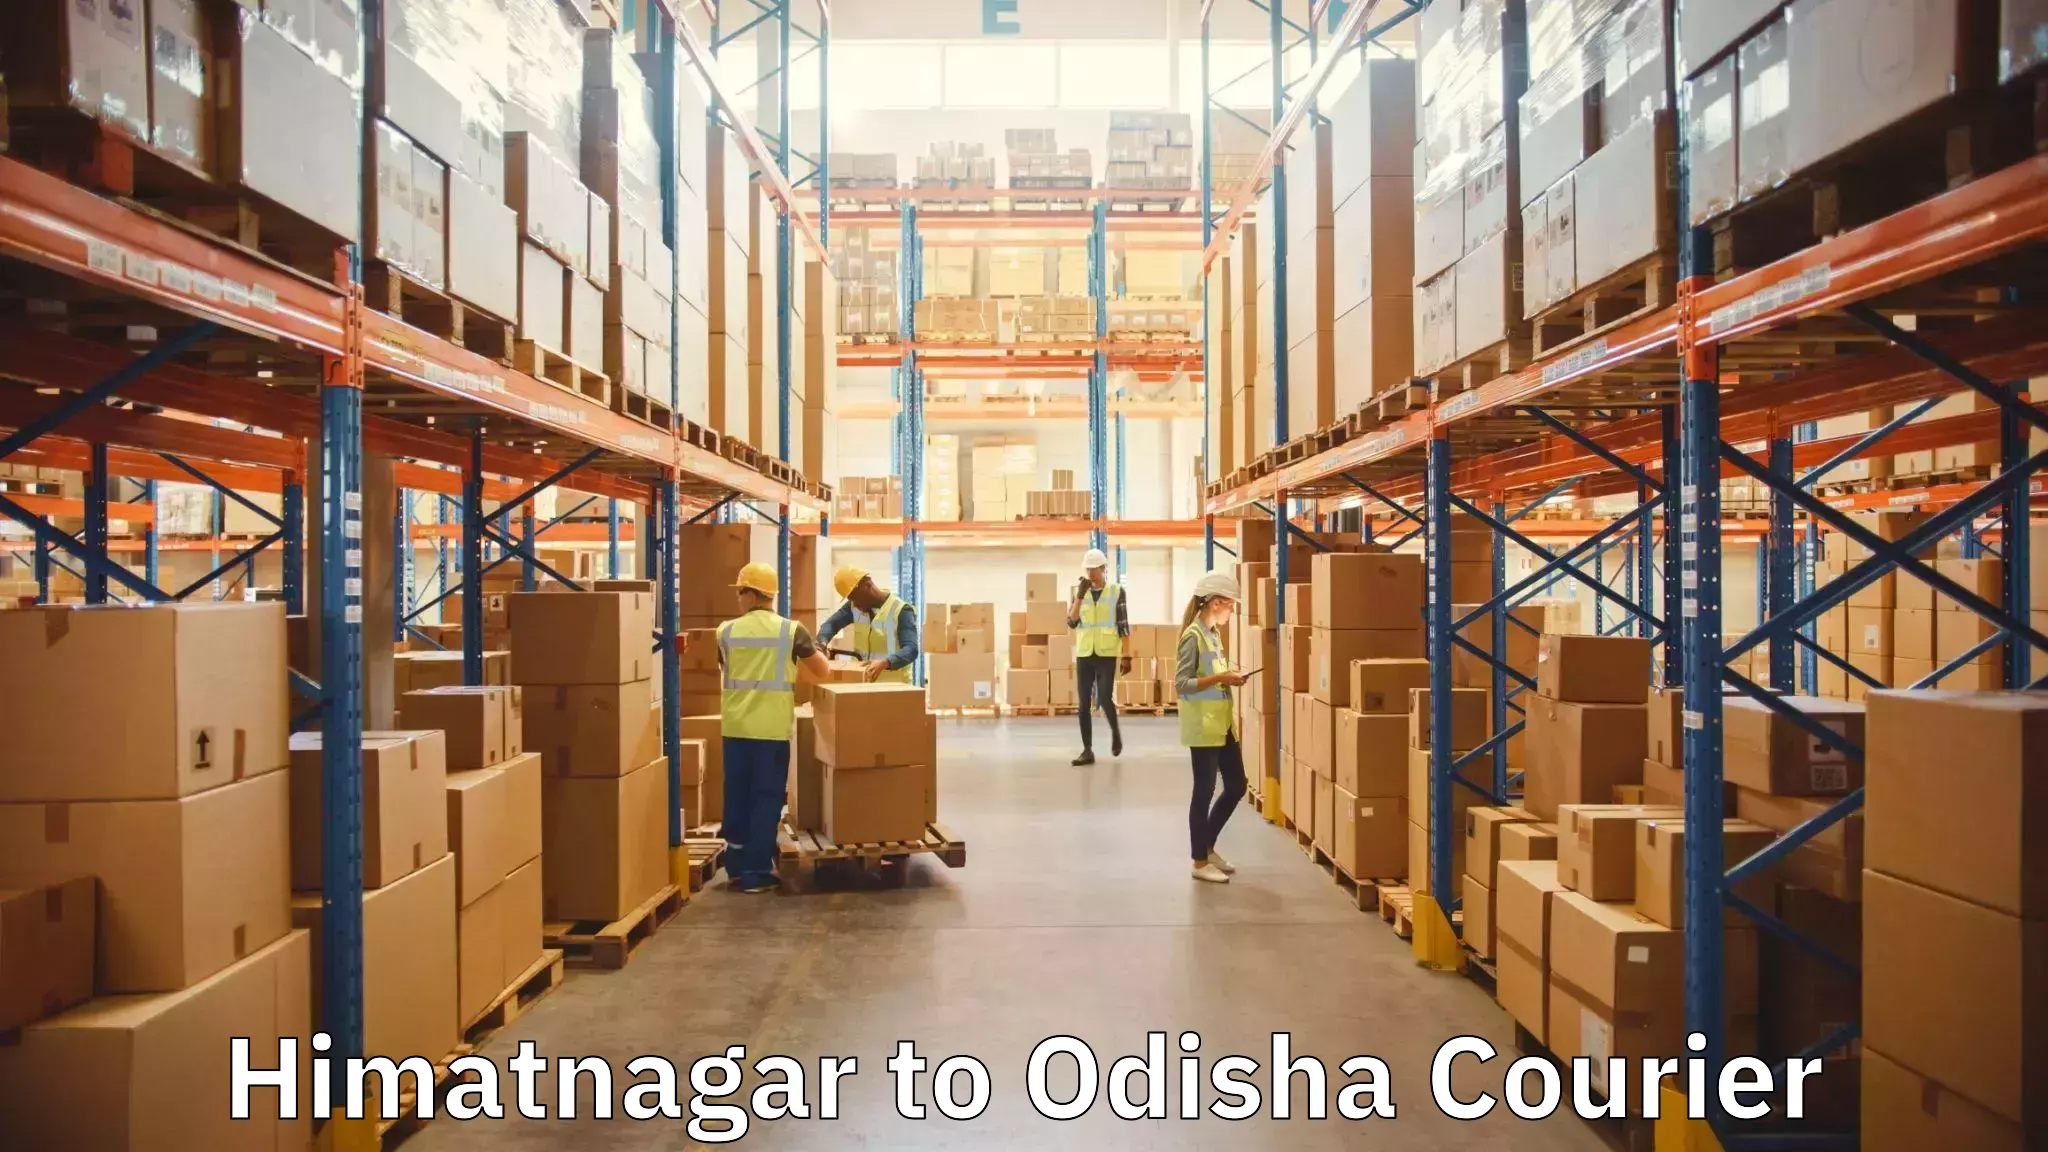 Moving and handling services Himatnagar to Jaipatna